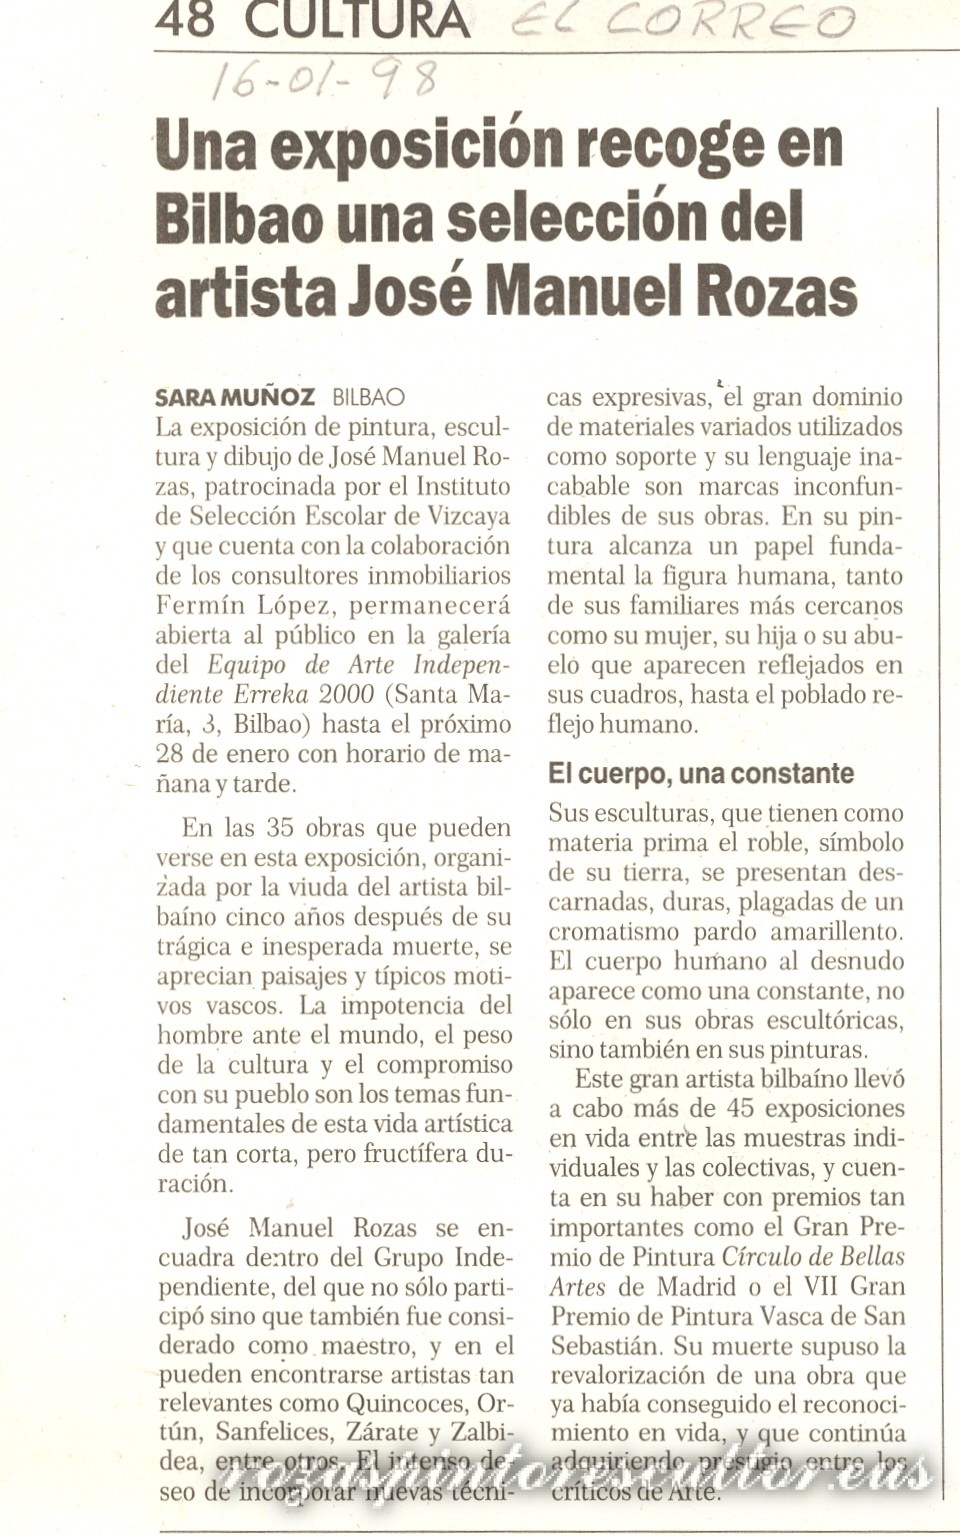 1998 El Correo – Jose Manuel Rozas selection – Sara Muñoz